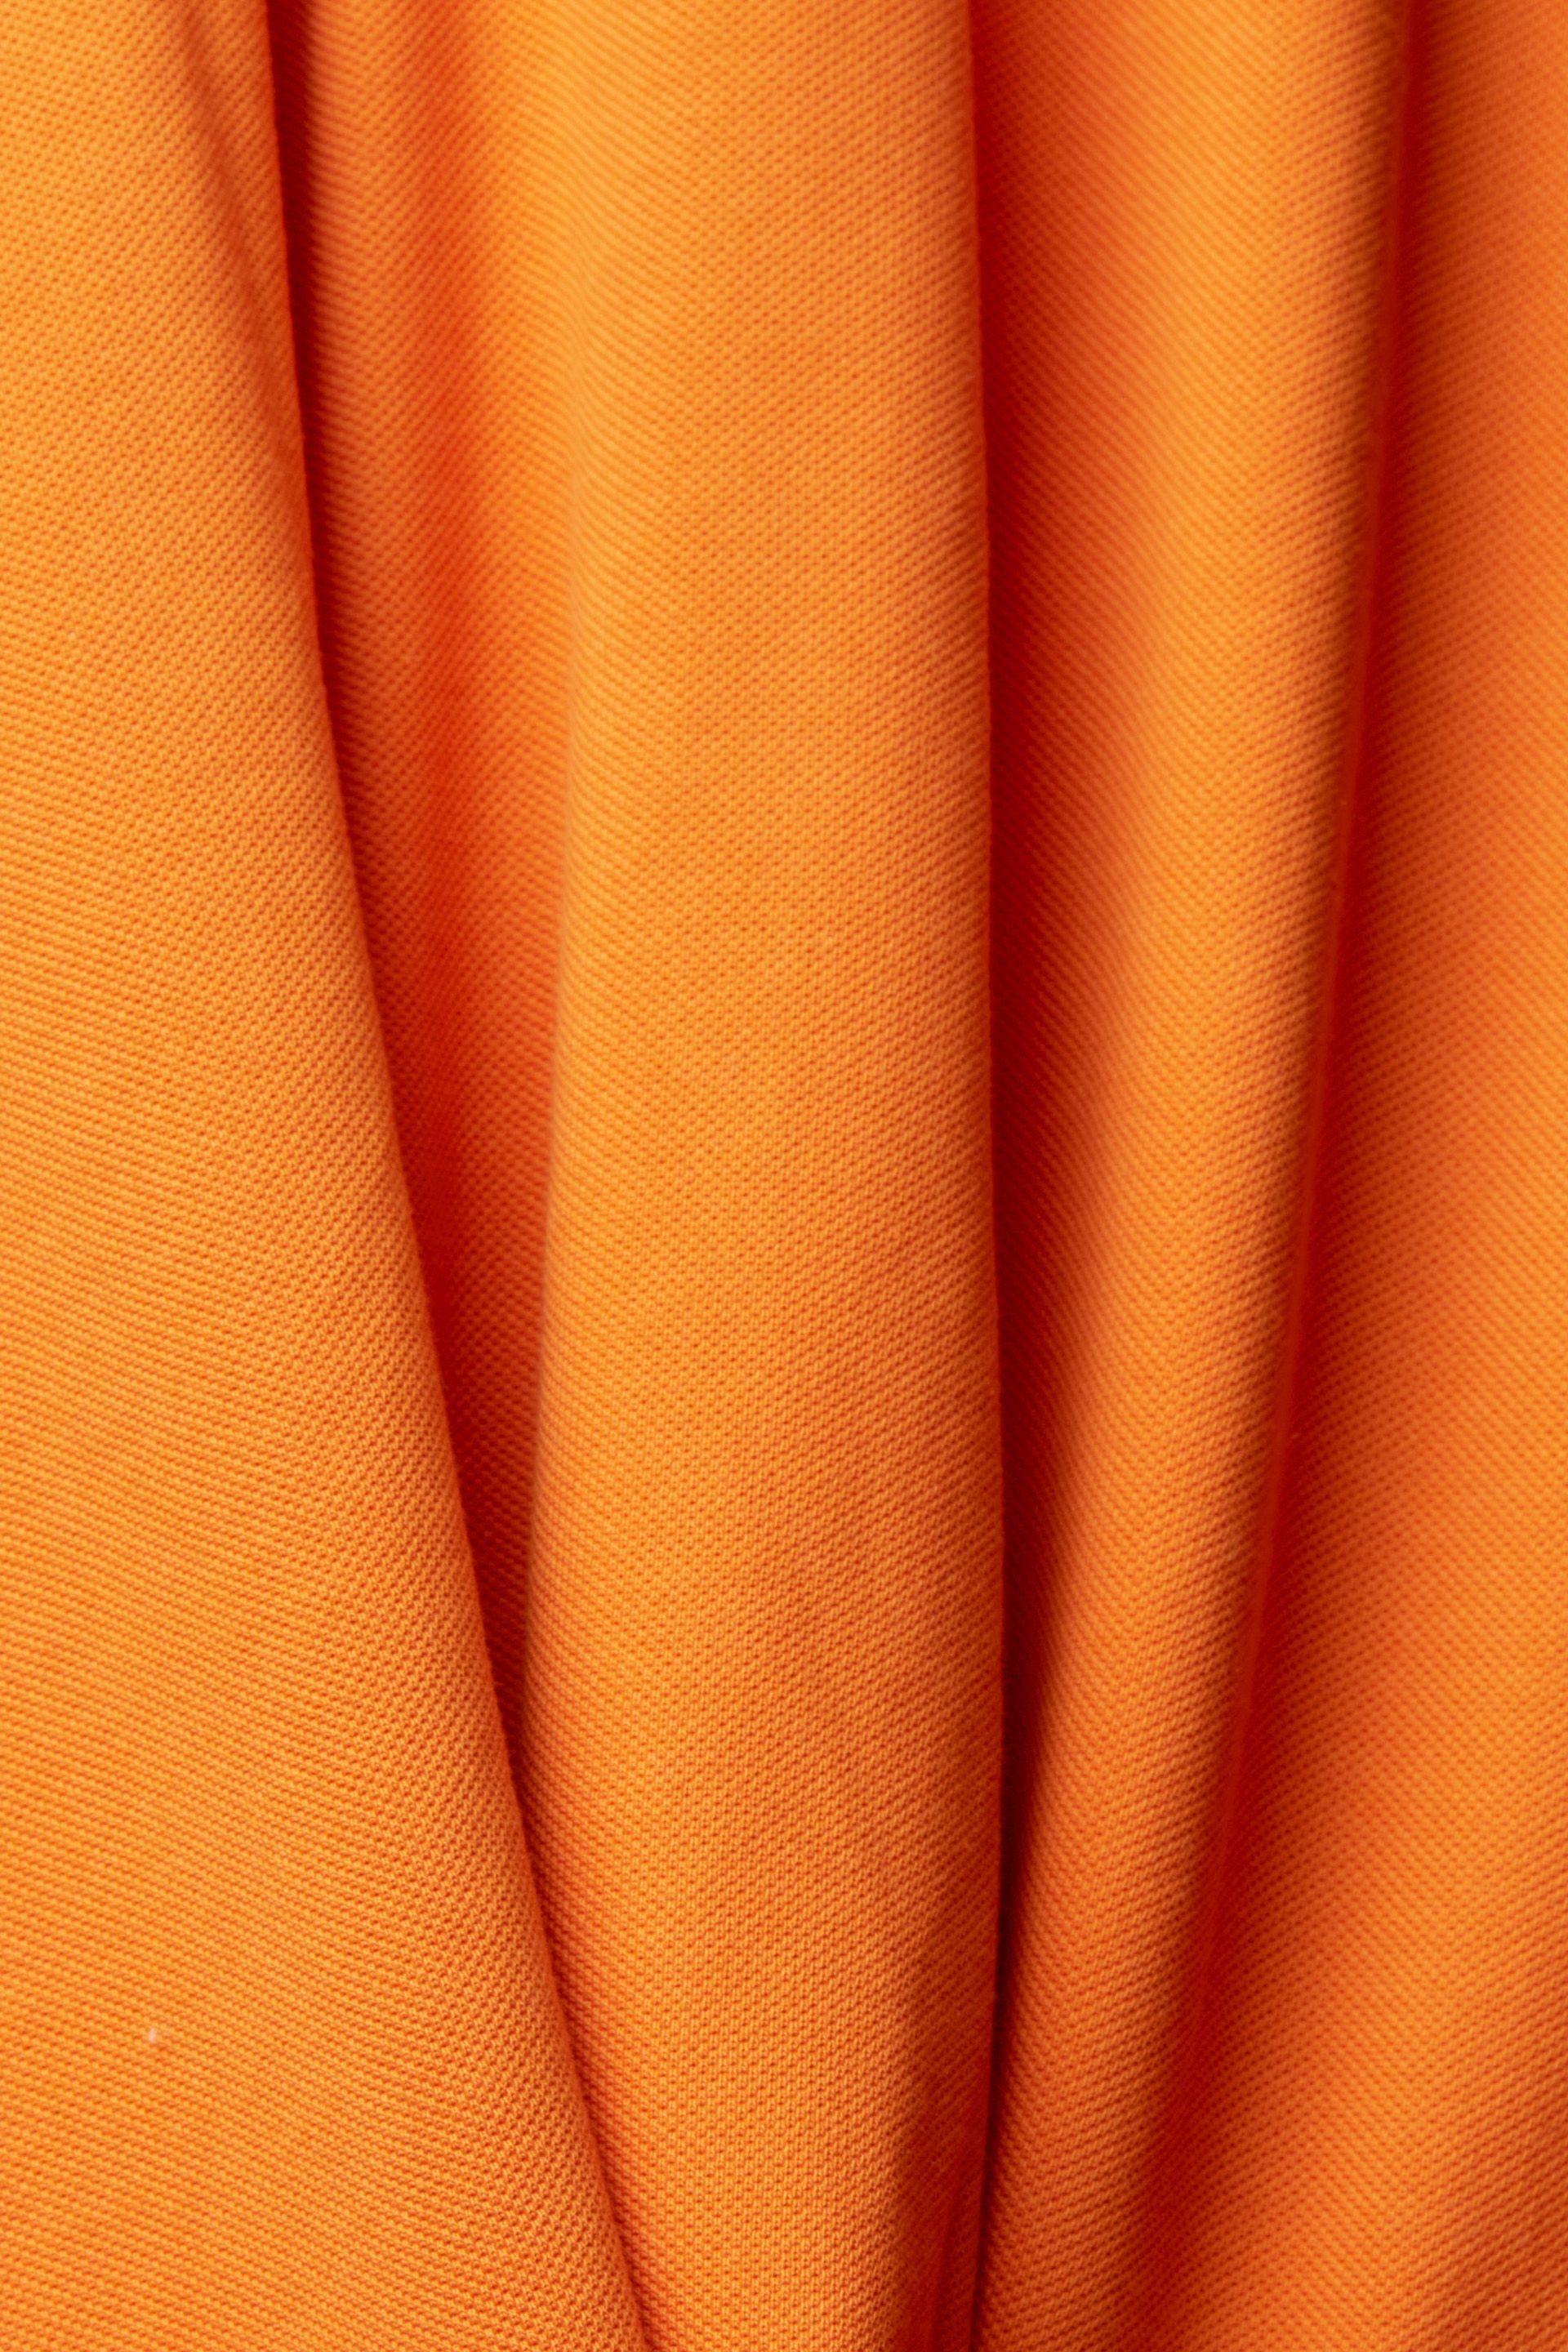 orange Poloshirt golden Esprit